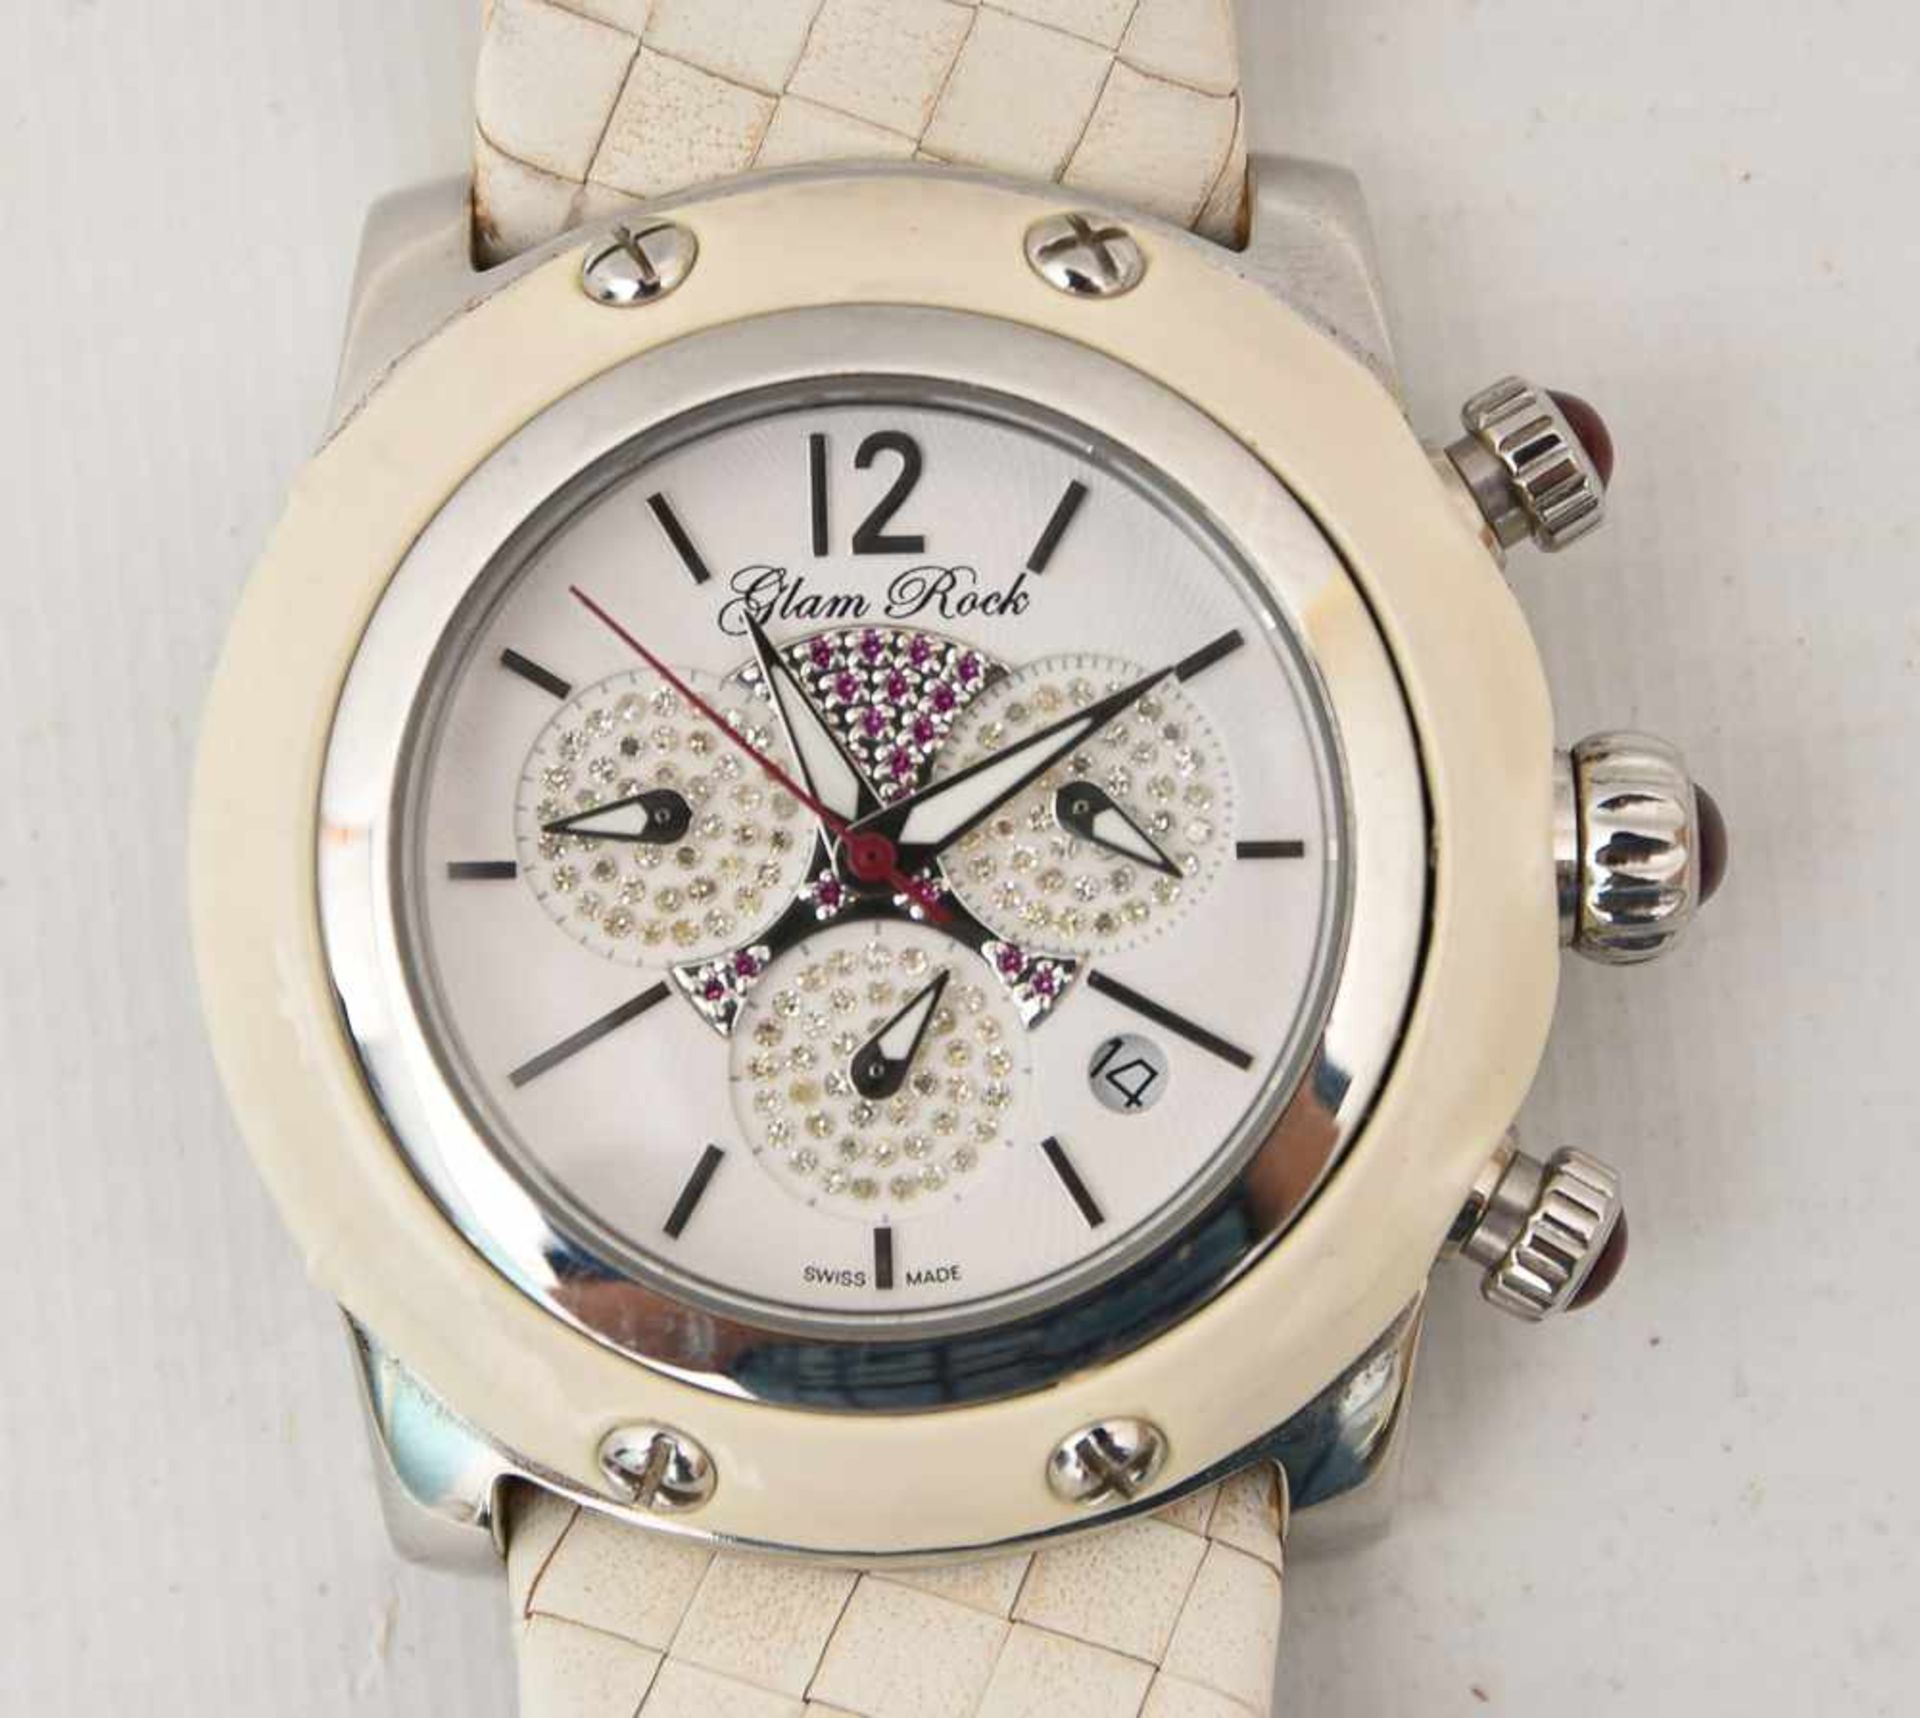 GLAM ROCK DAMENUHR WEISS, Edelstahl/Leder, um 2000 Quartz Damen-Armbanduhr "Glam Rock". weißes - Bild 2 aus 5